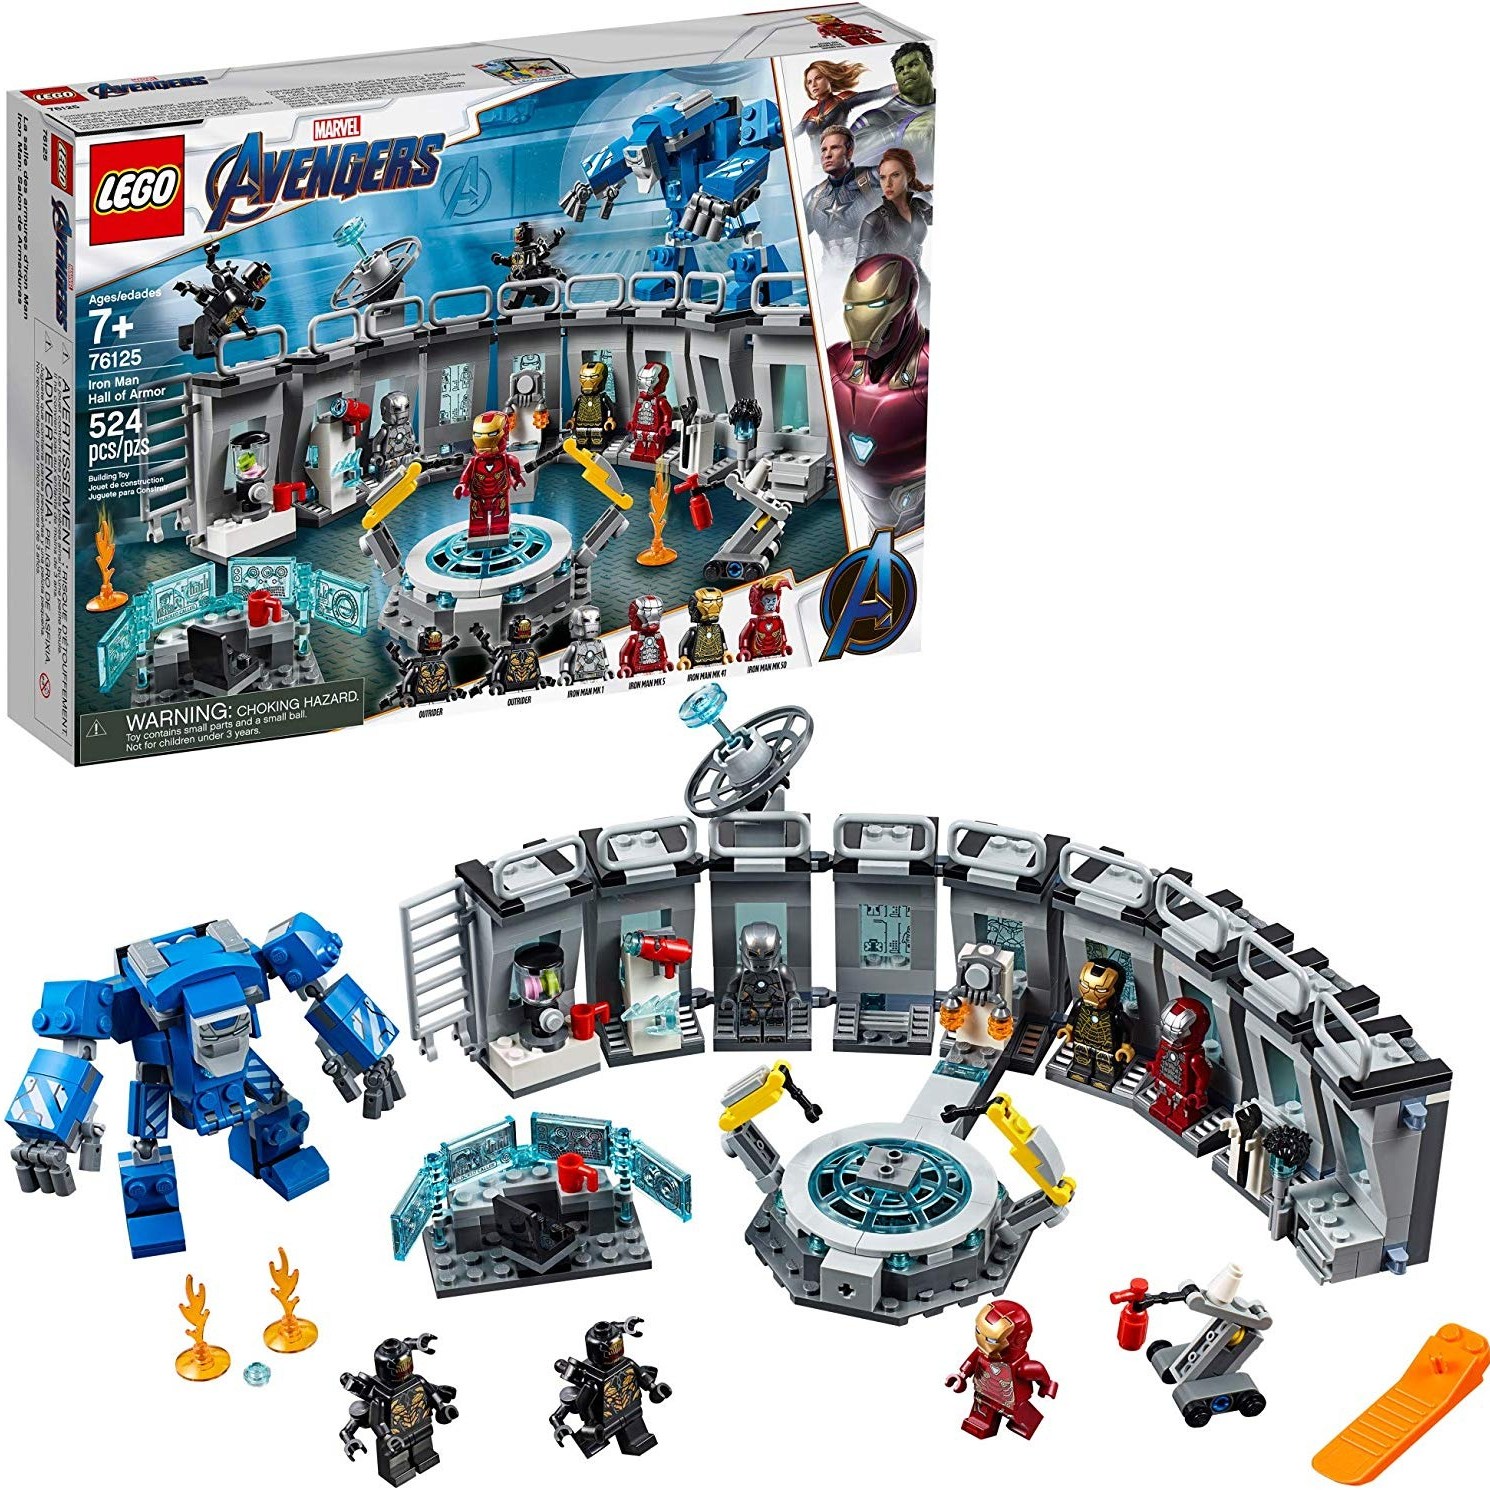 LEGO 레고 마블 어벤져스 아이언맨 연구소 524피스 76125, 단일제품 